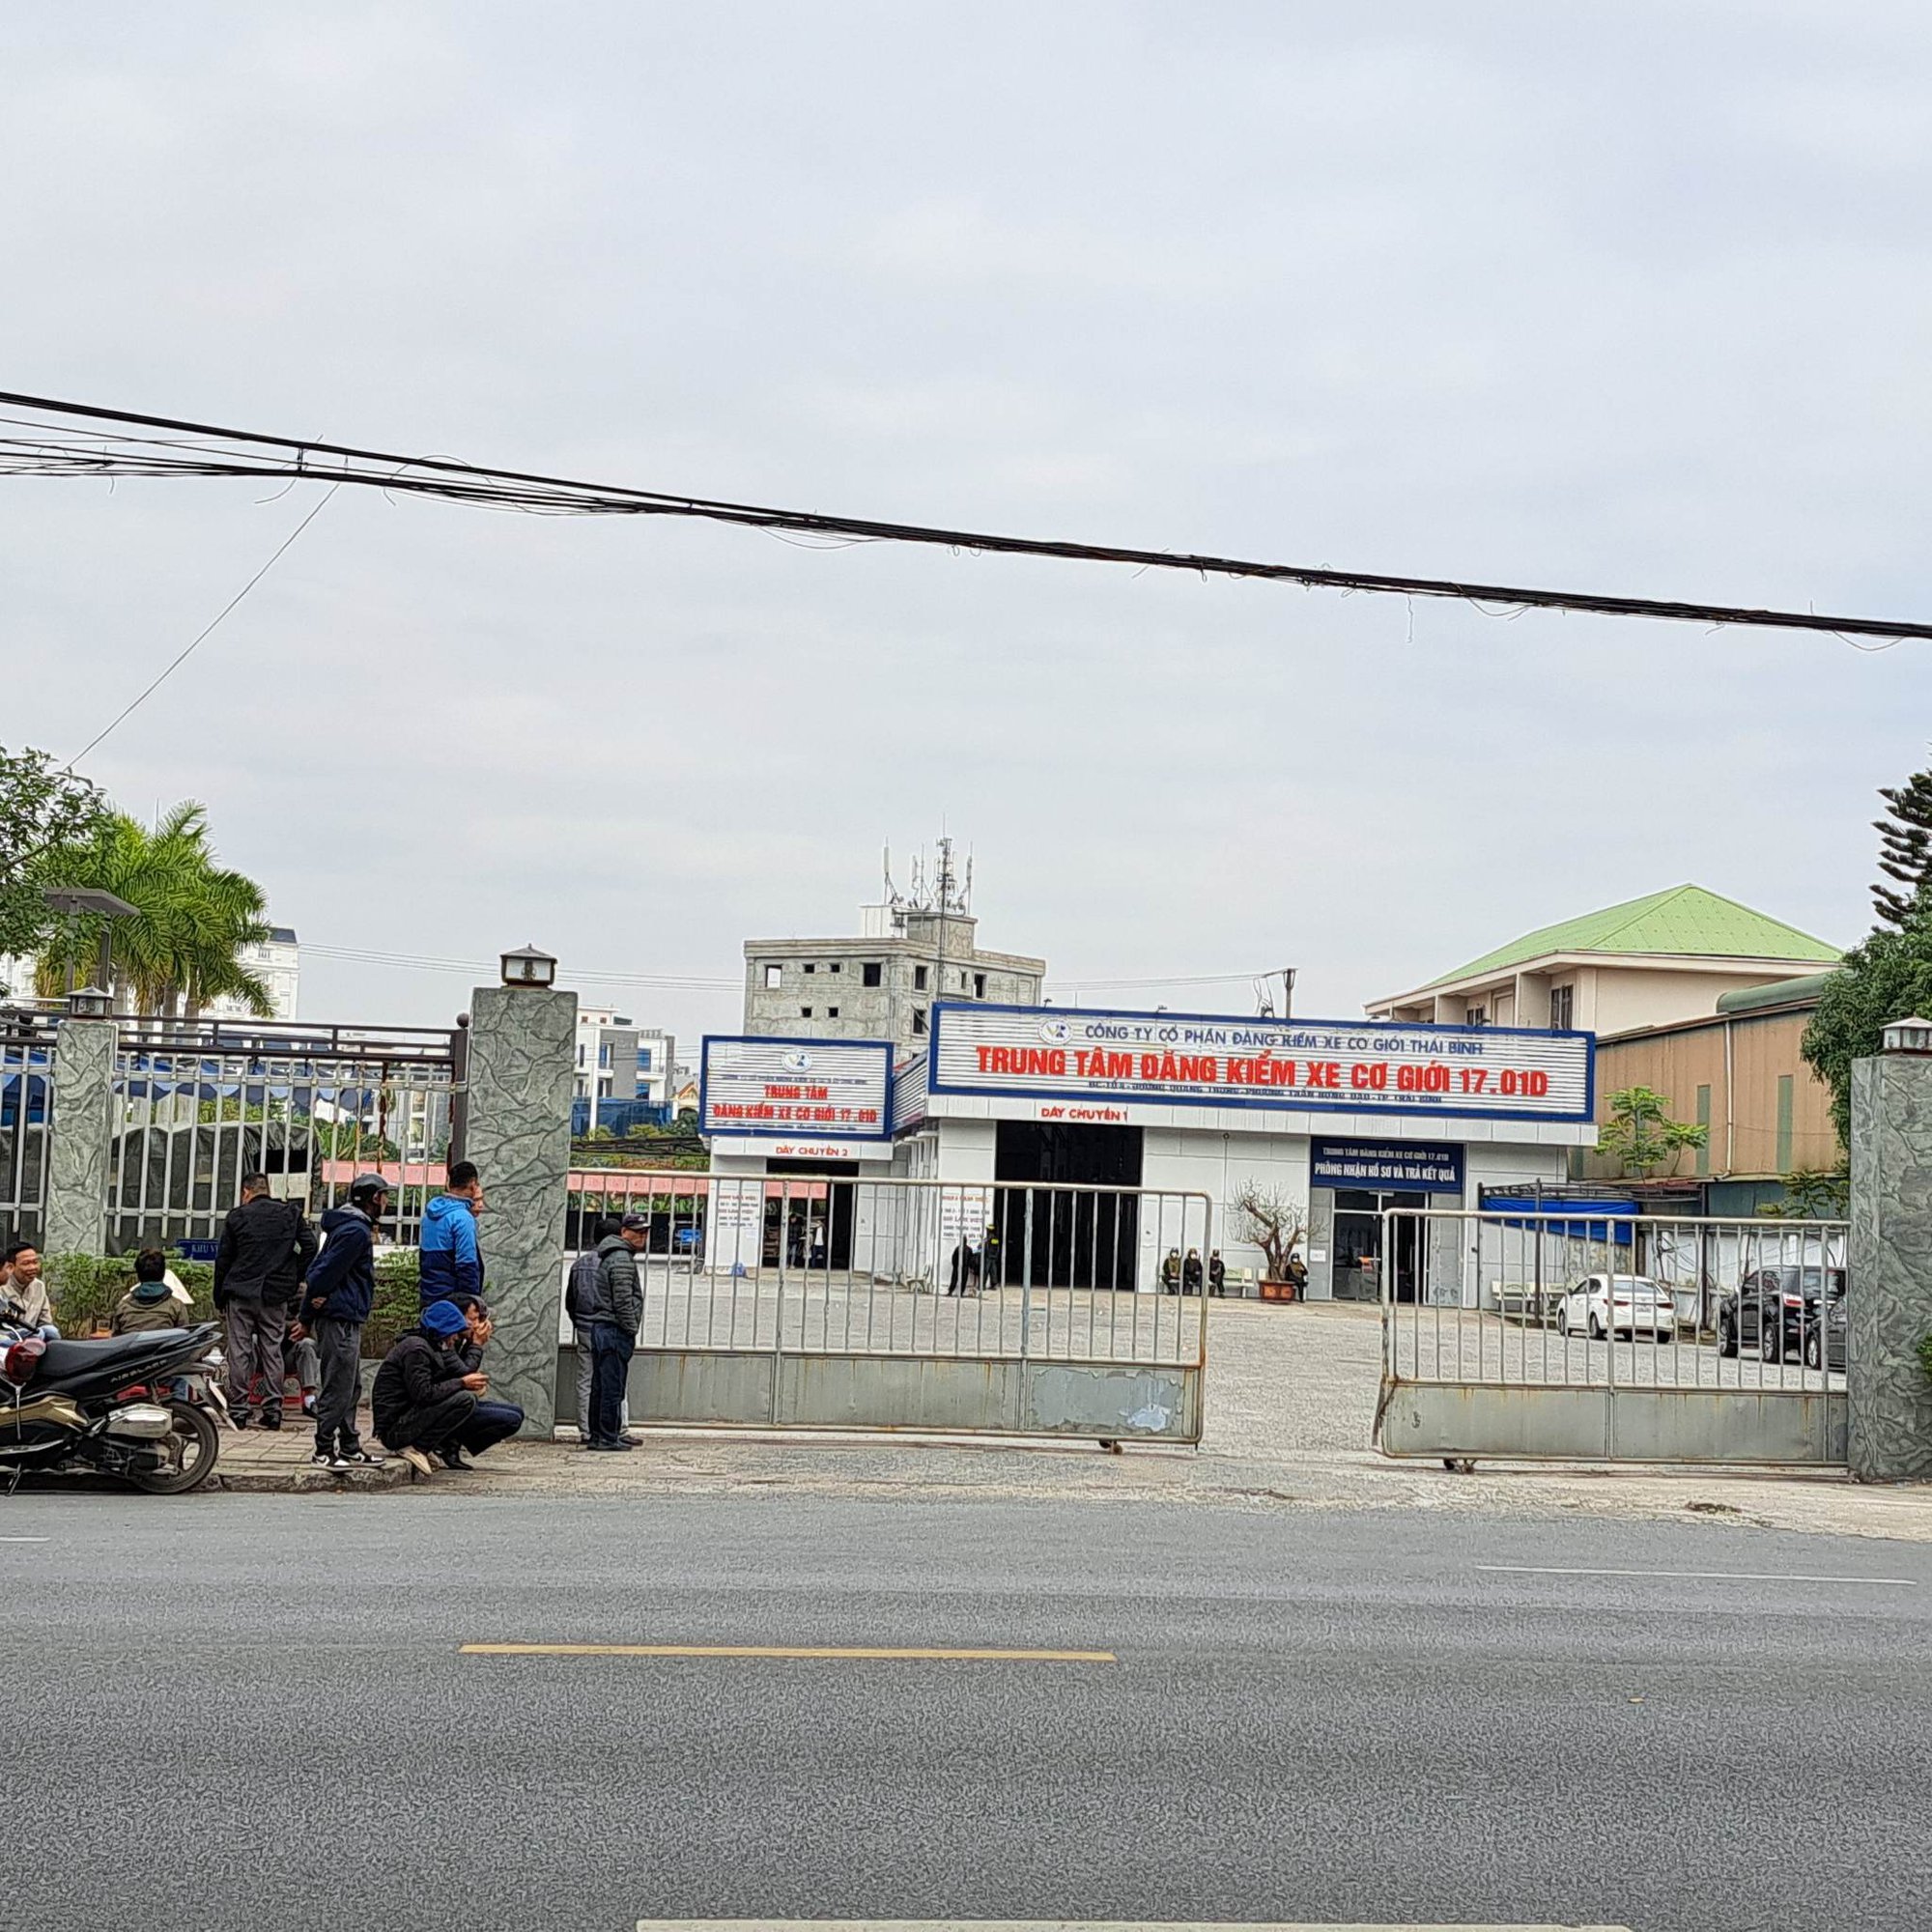 Cảnh sát đồng loạt khám xét 2 trung tâm đăng kiểm xe ở Thái Bình - Ảnh 1.